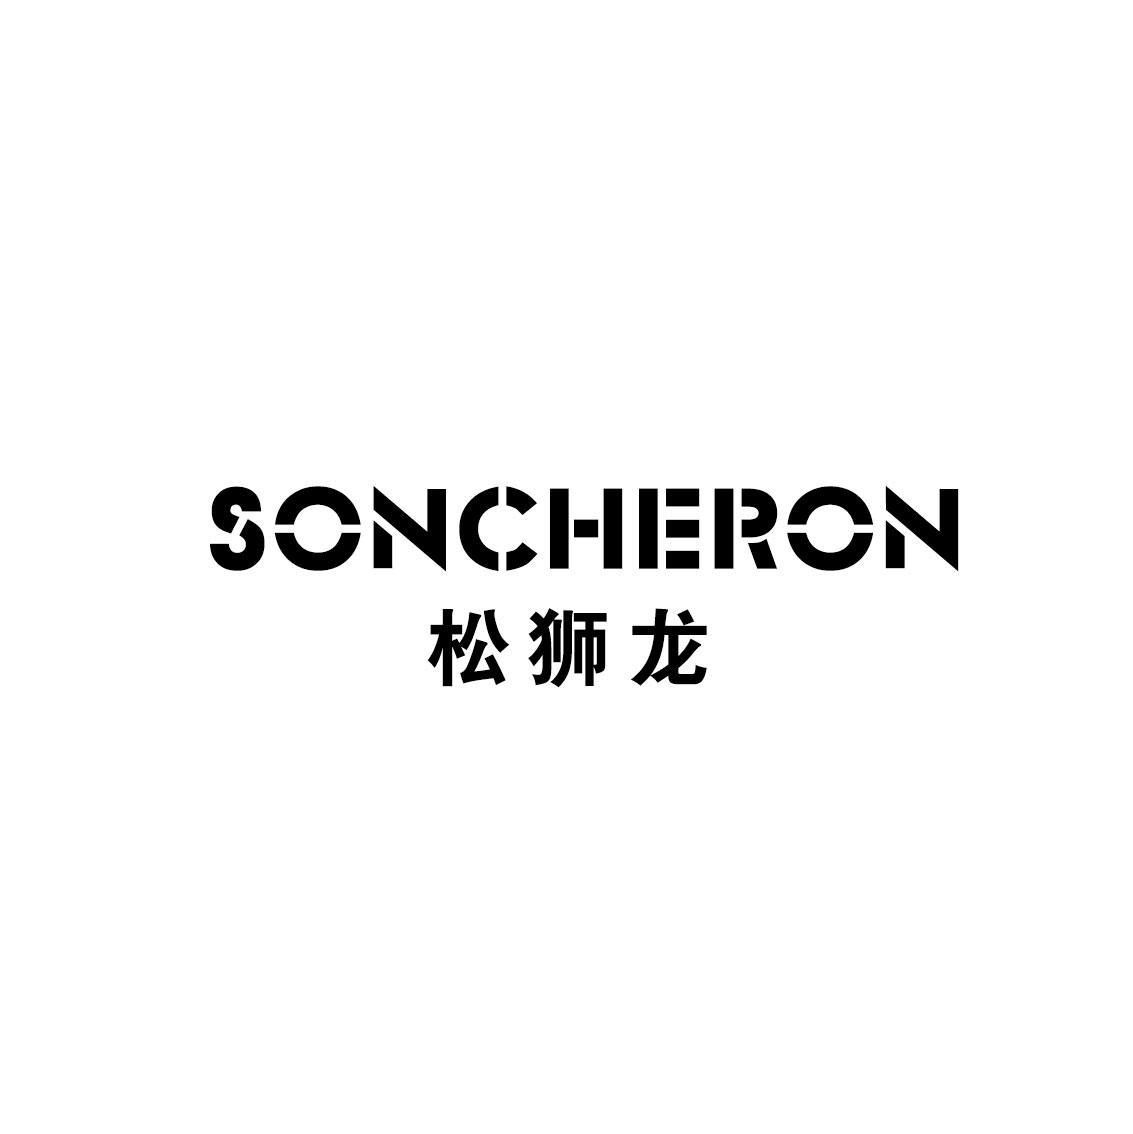 松狮龙 SONCHERON